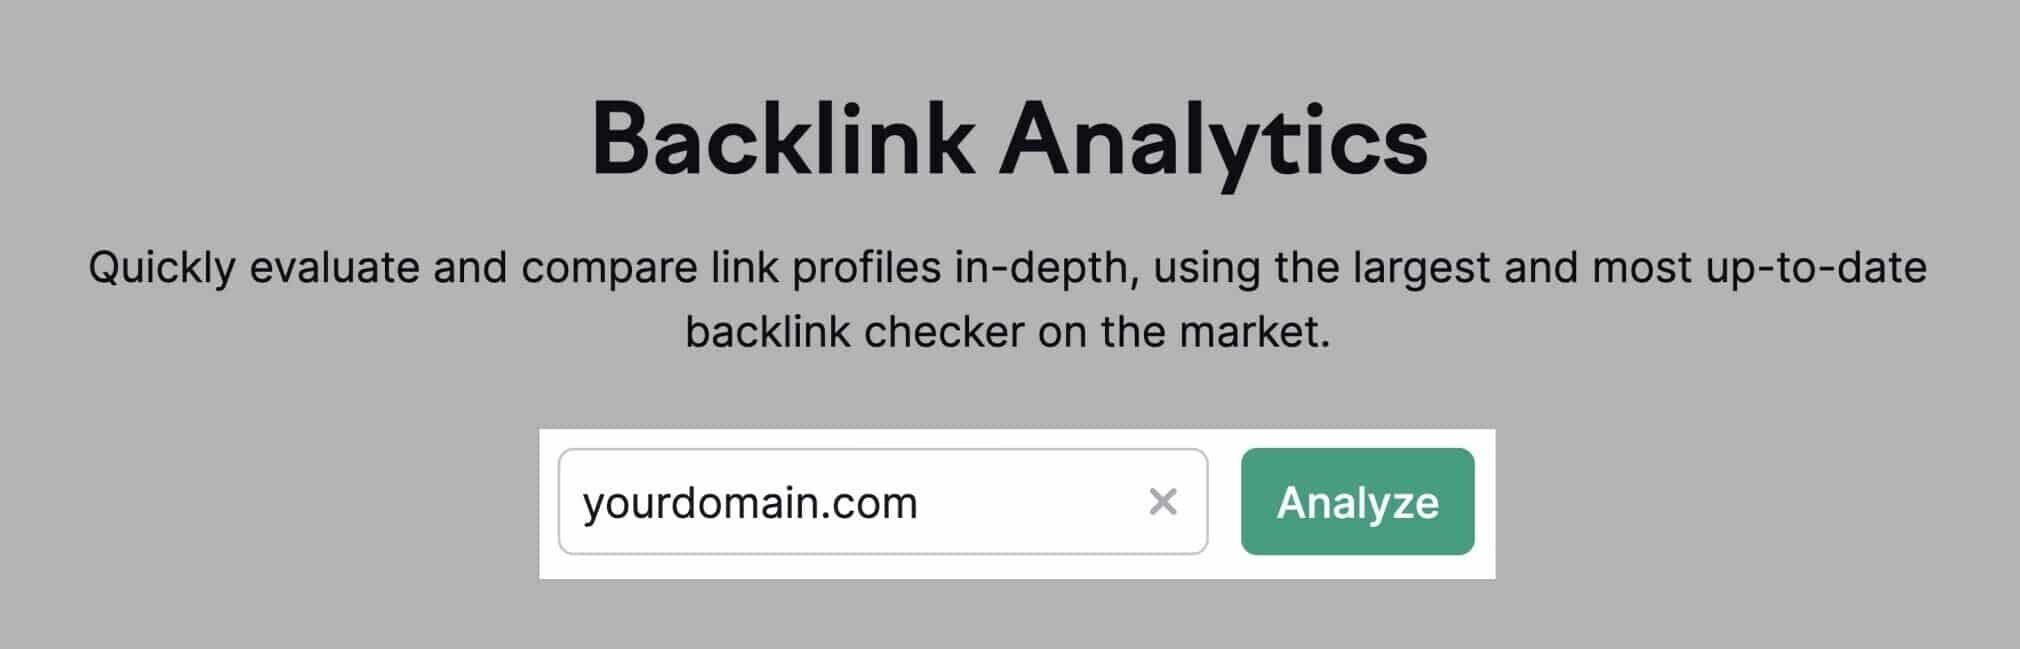 herramienta de análisis de backlinks